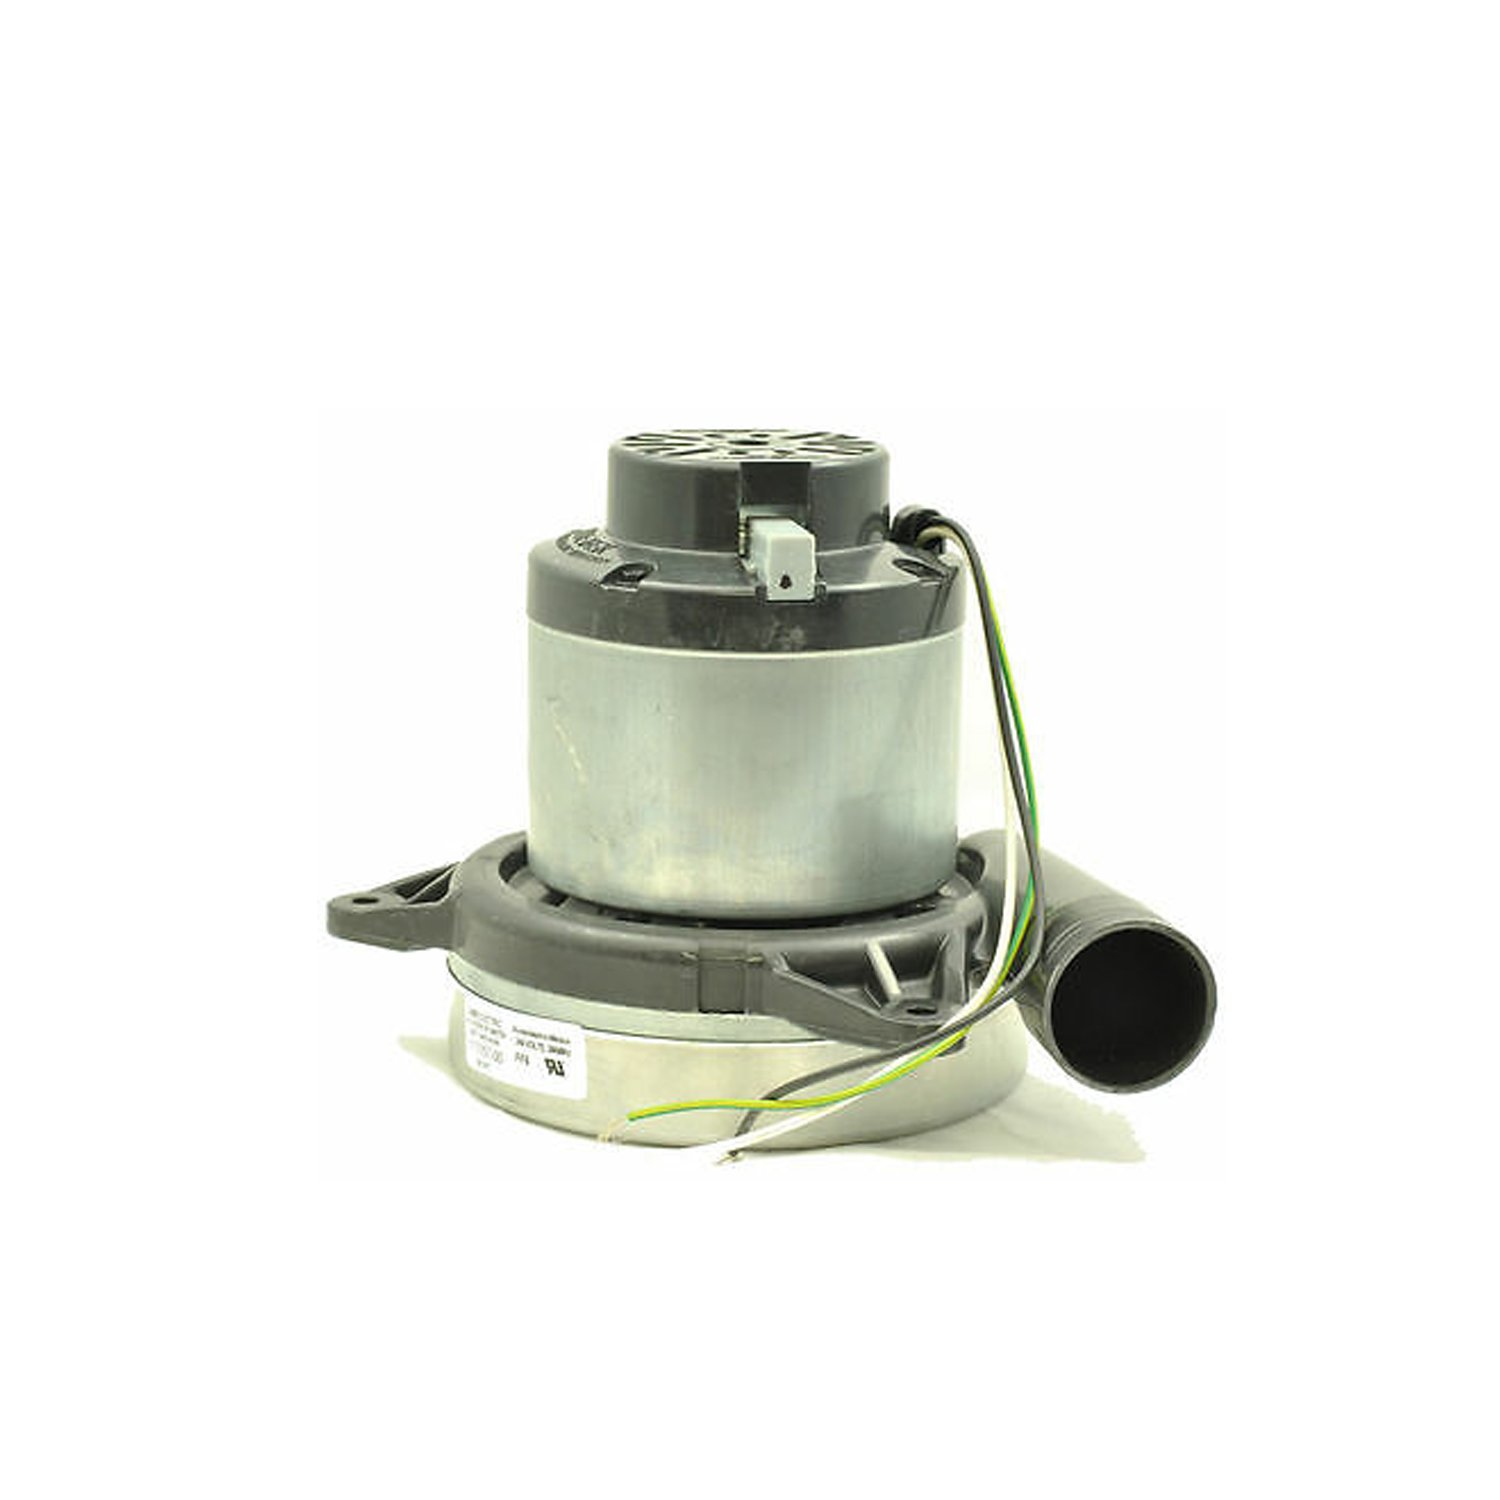 Vacuum cleaner motor, universal, 1500 W/230 V, AMETEK LAMB 117157-00, D=182mm